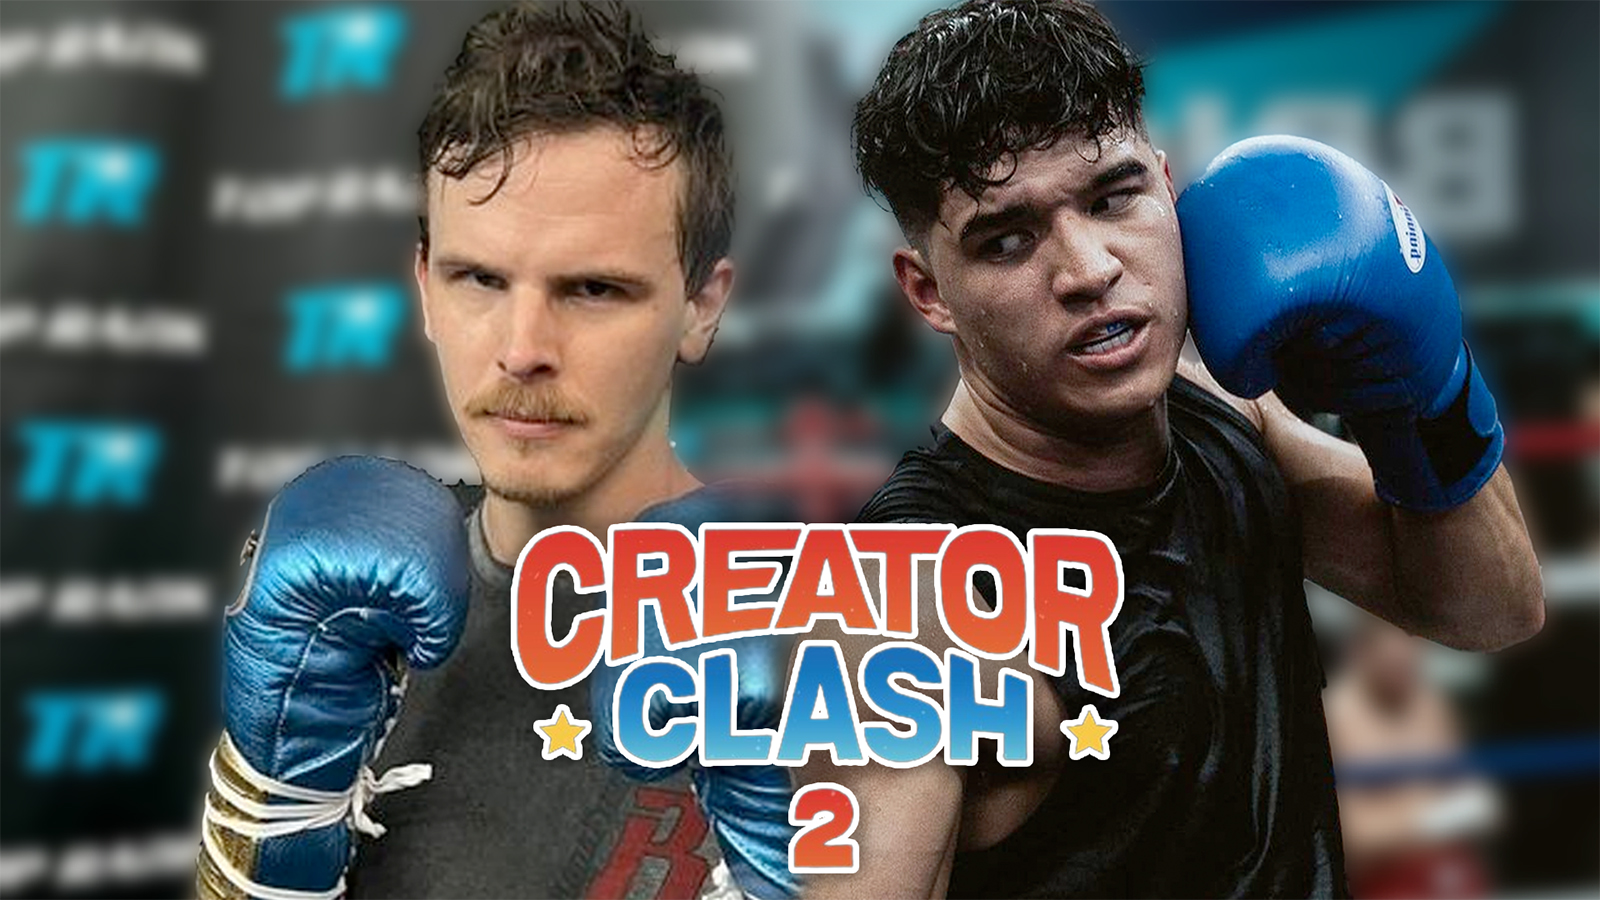 Apr 15, Creator Clash 2 Pro Boxing